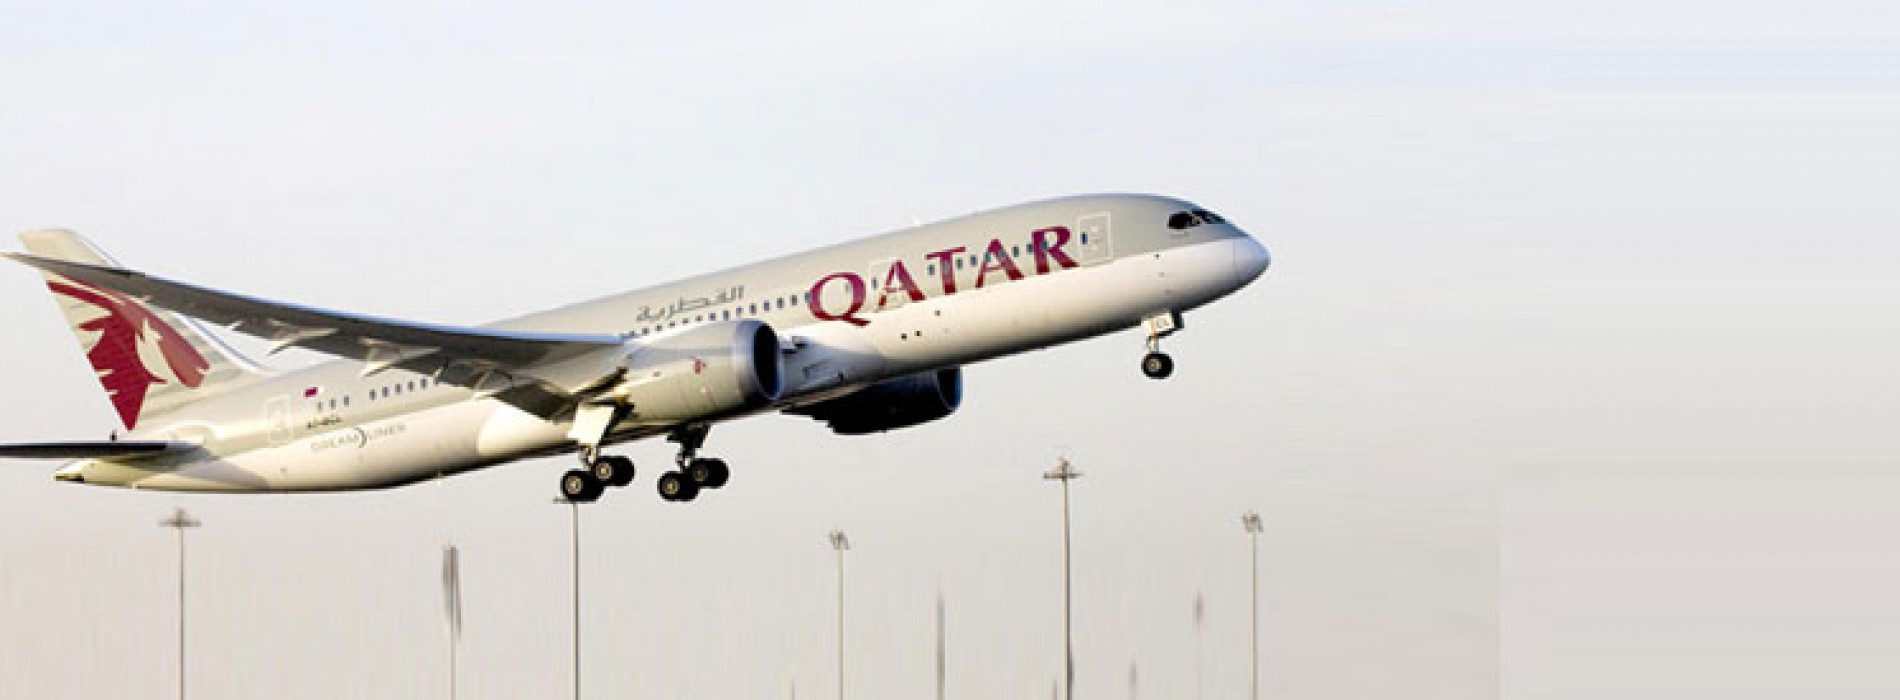 Qatar Airways launches new Durban flights